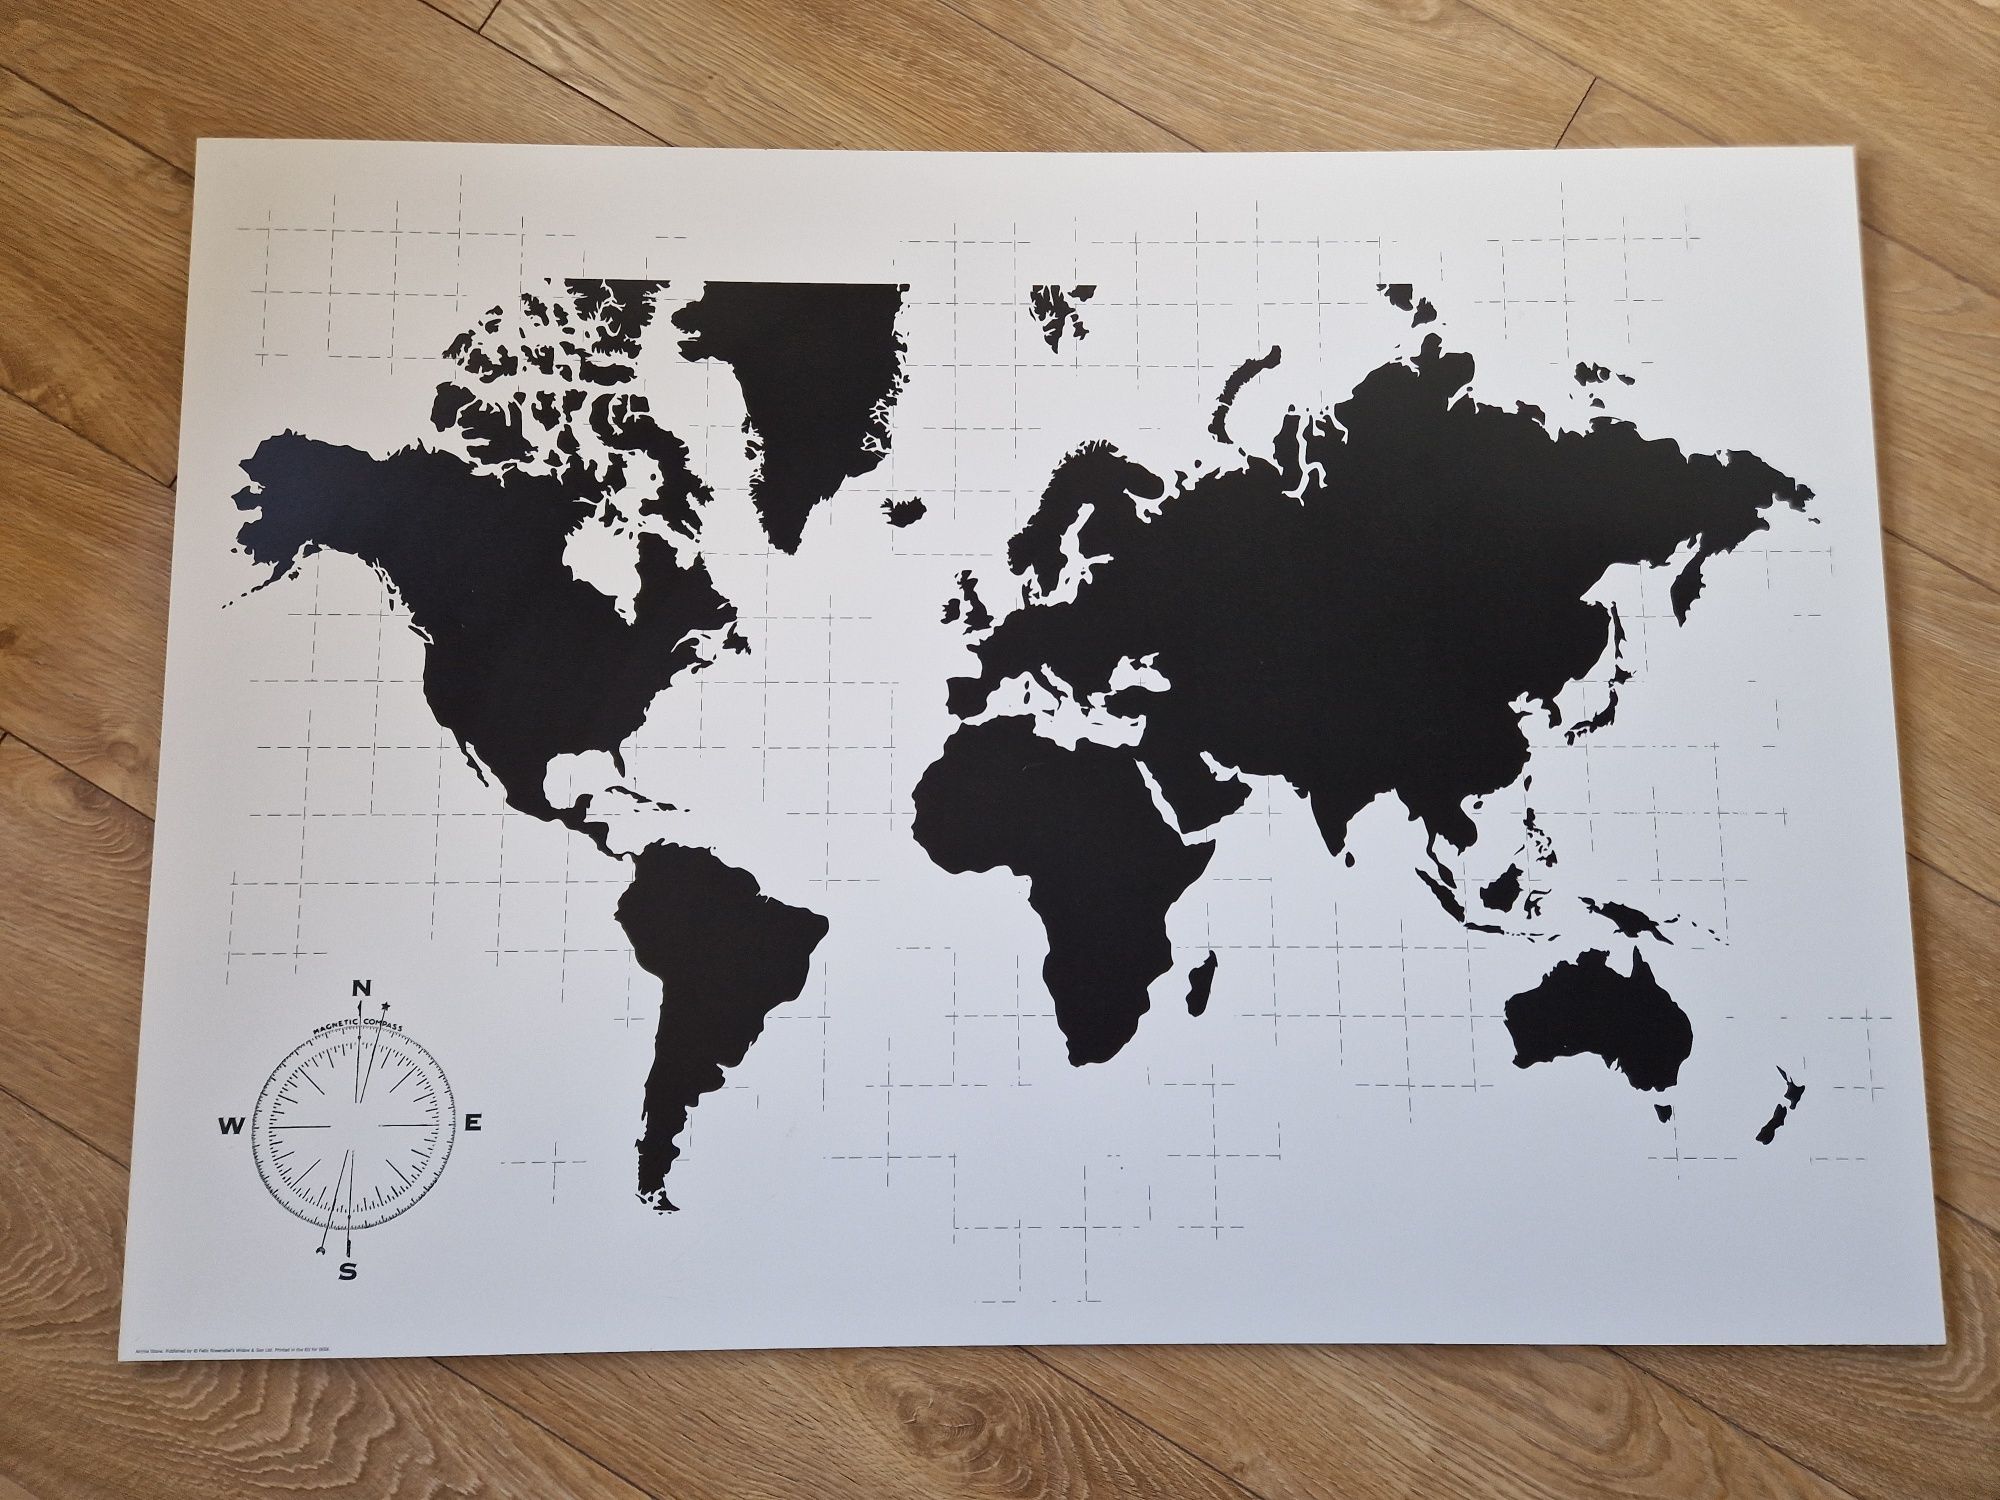 Obraz mapa świata Ikea Molltorp